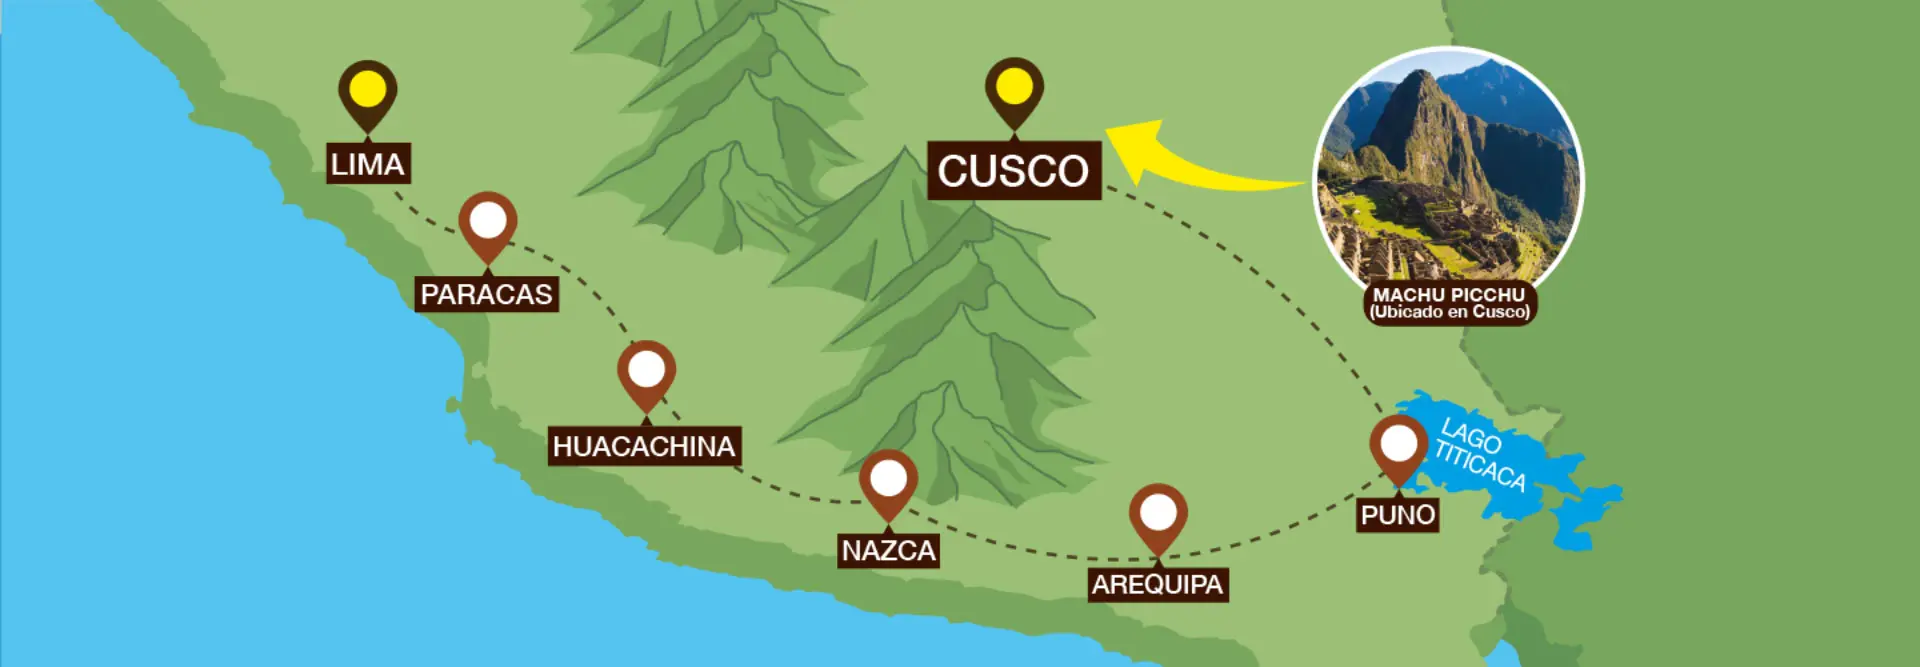 distancia de lima a cusco en tren - Cuánto demora el viaje en avión de Lima a Cusco